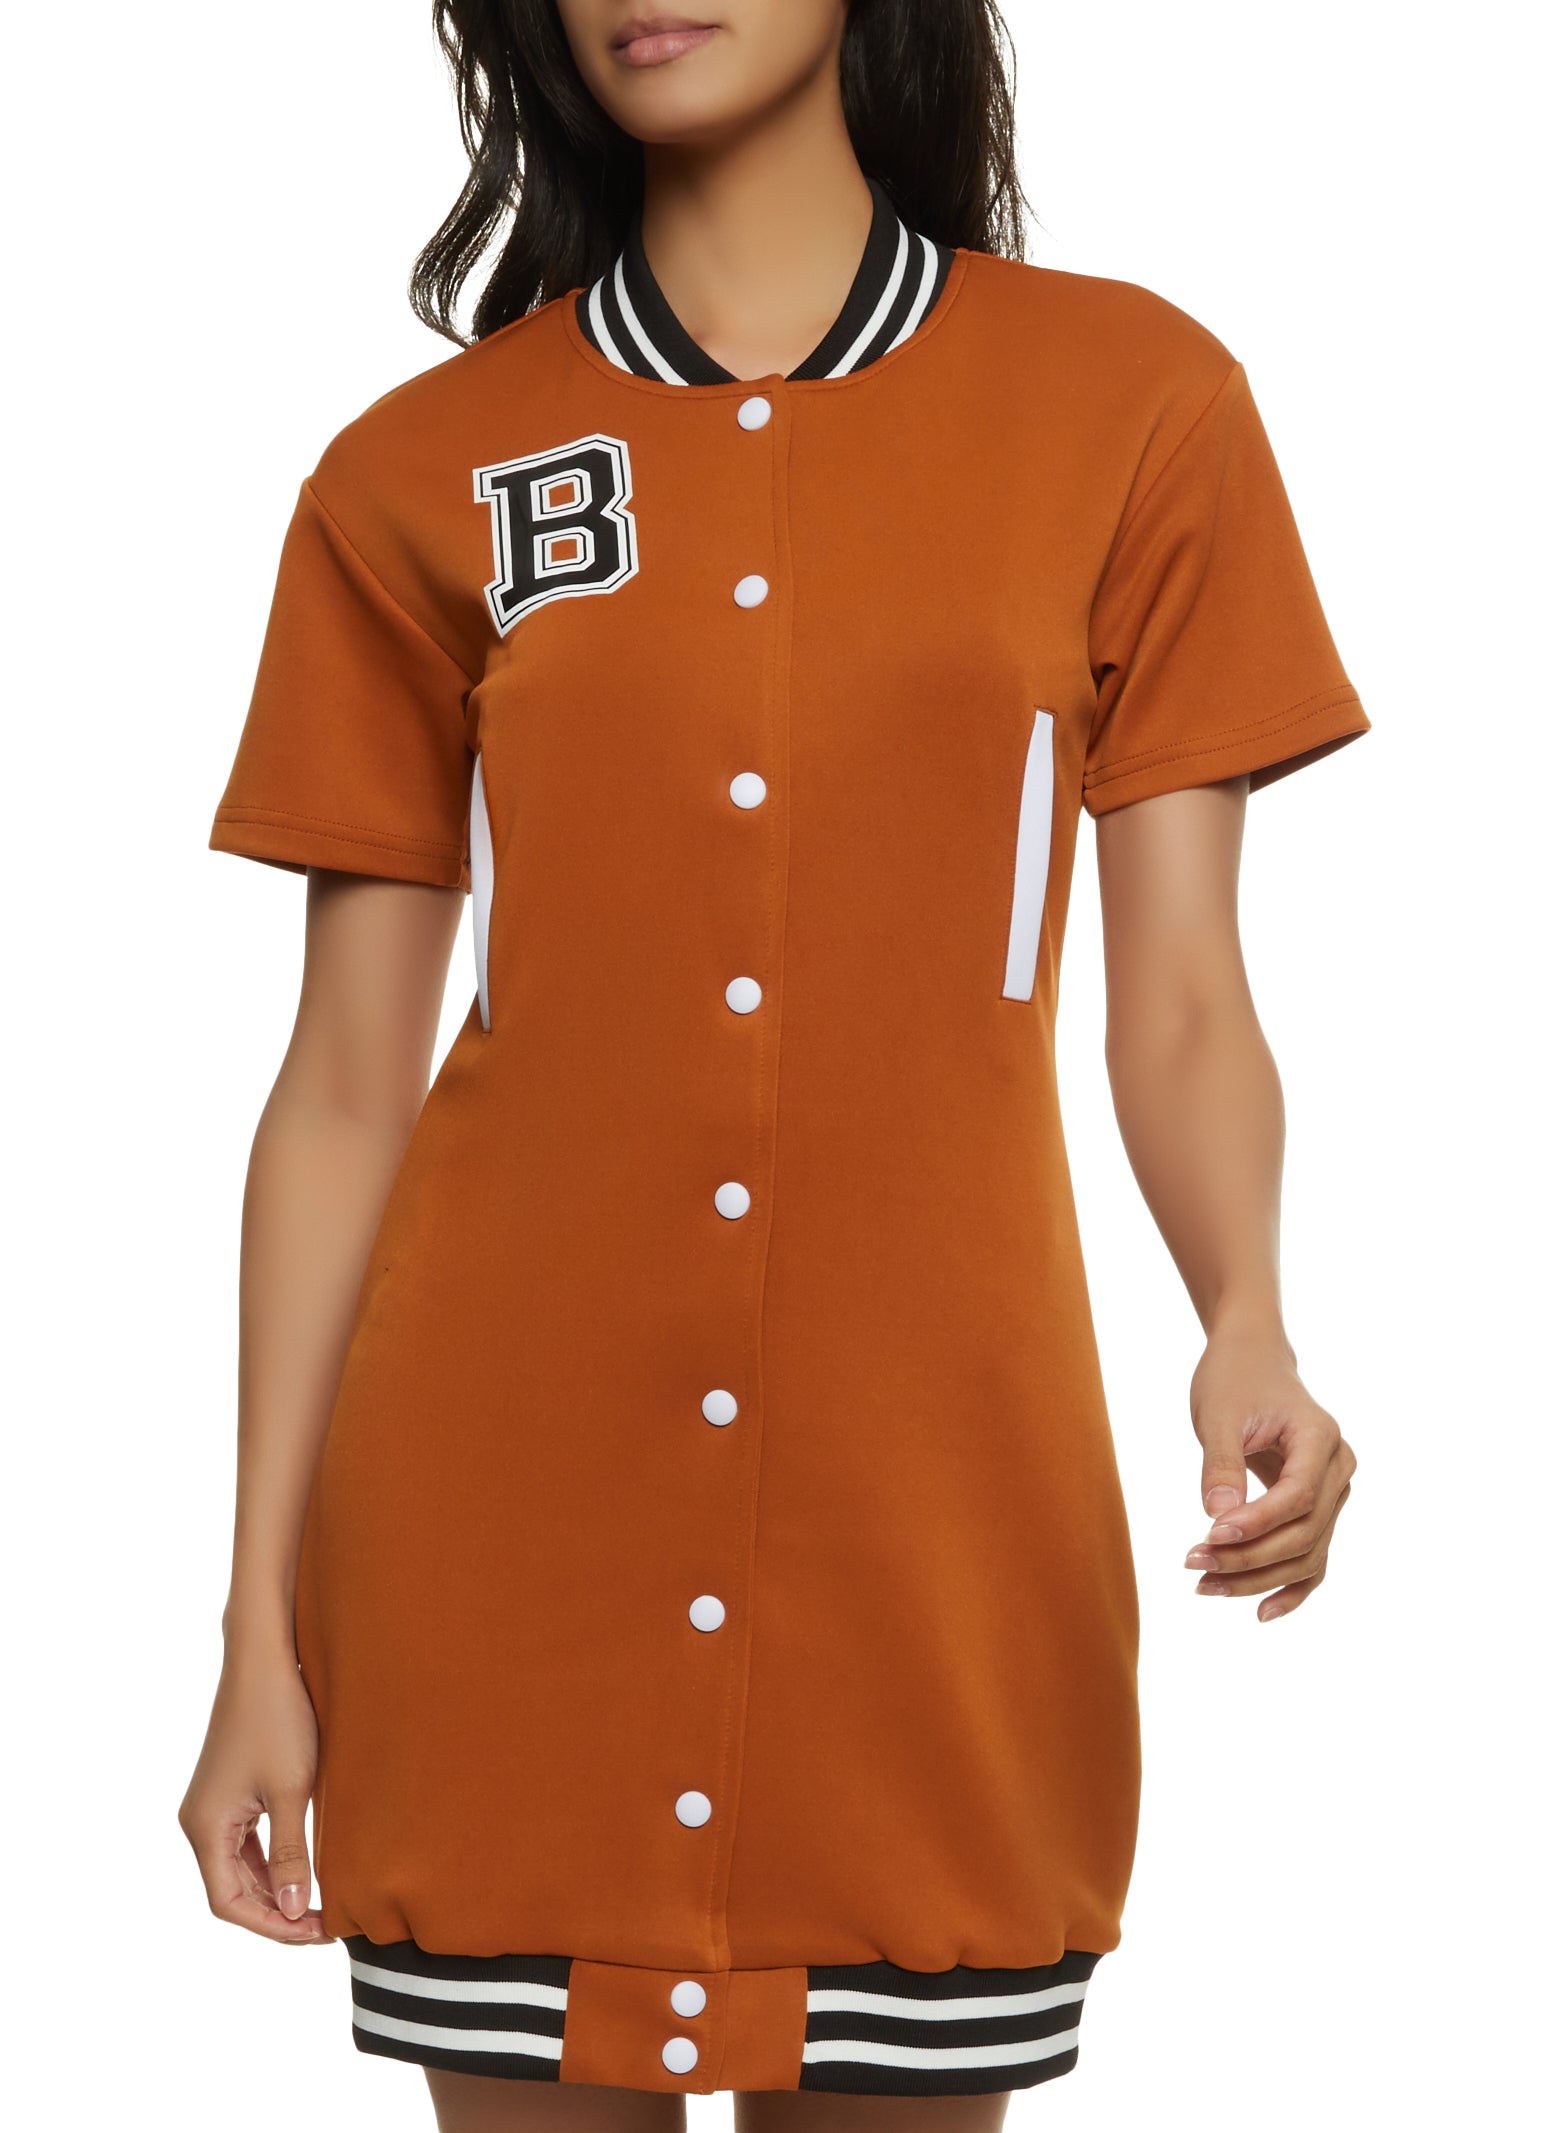 button up baseball jersey dress